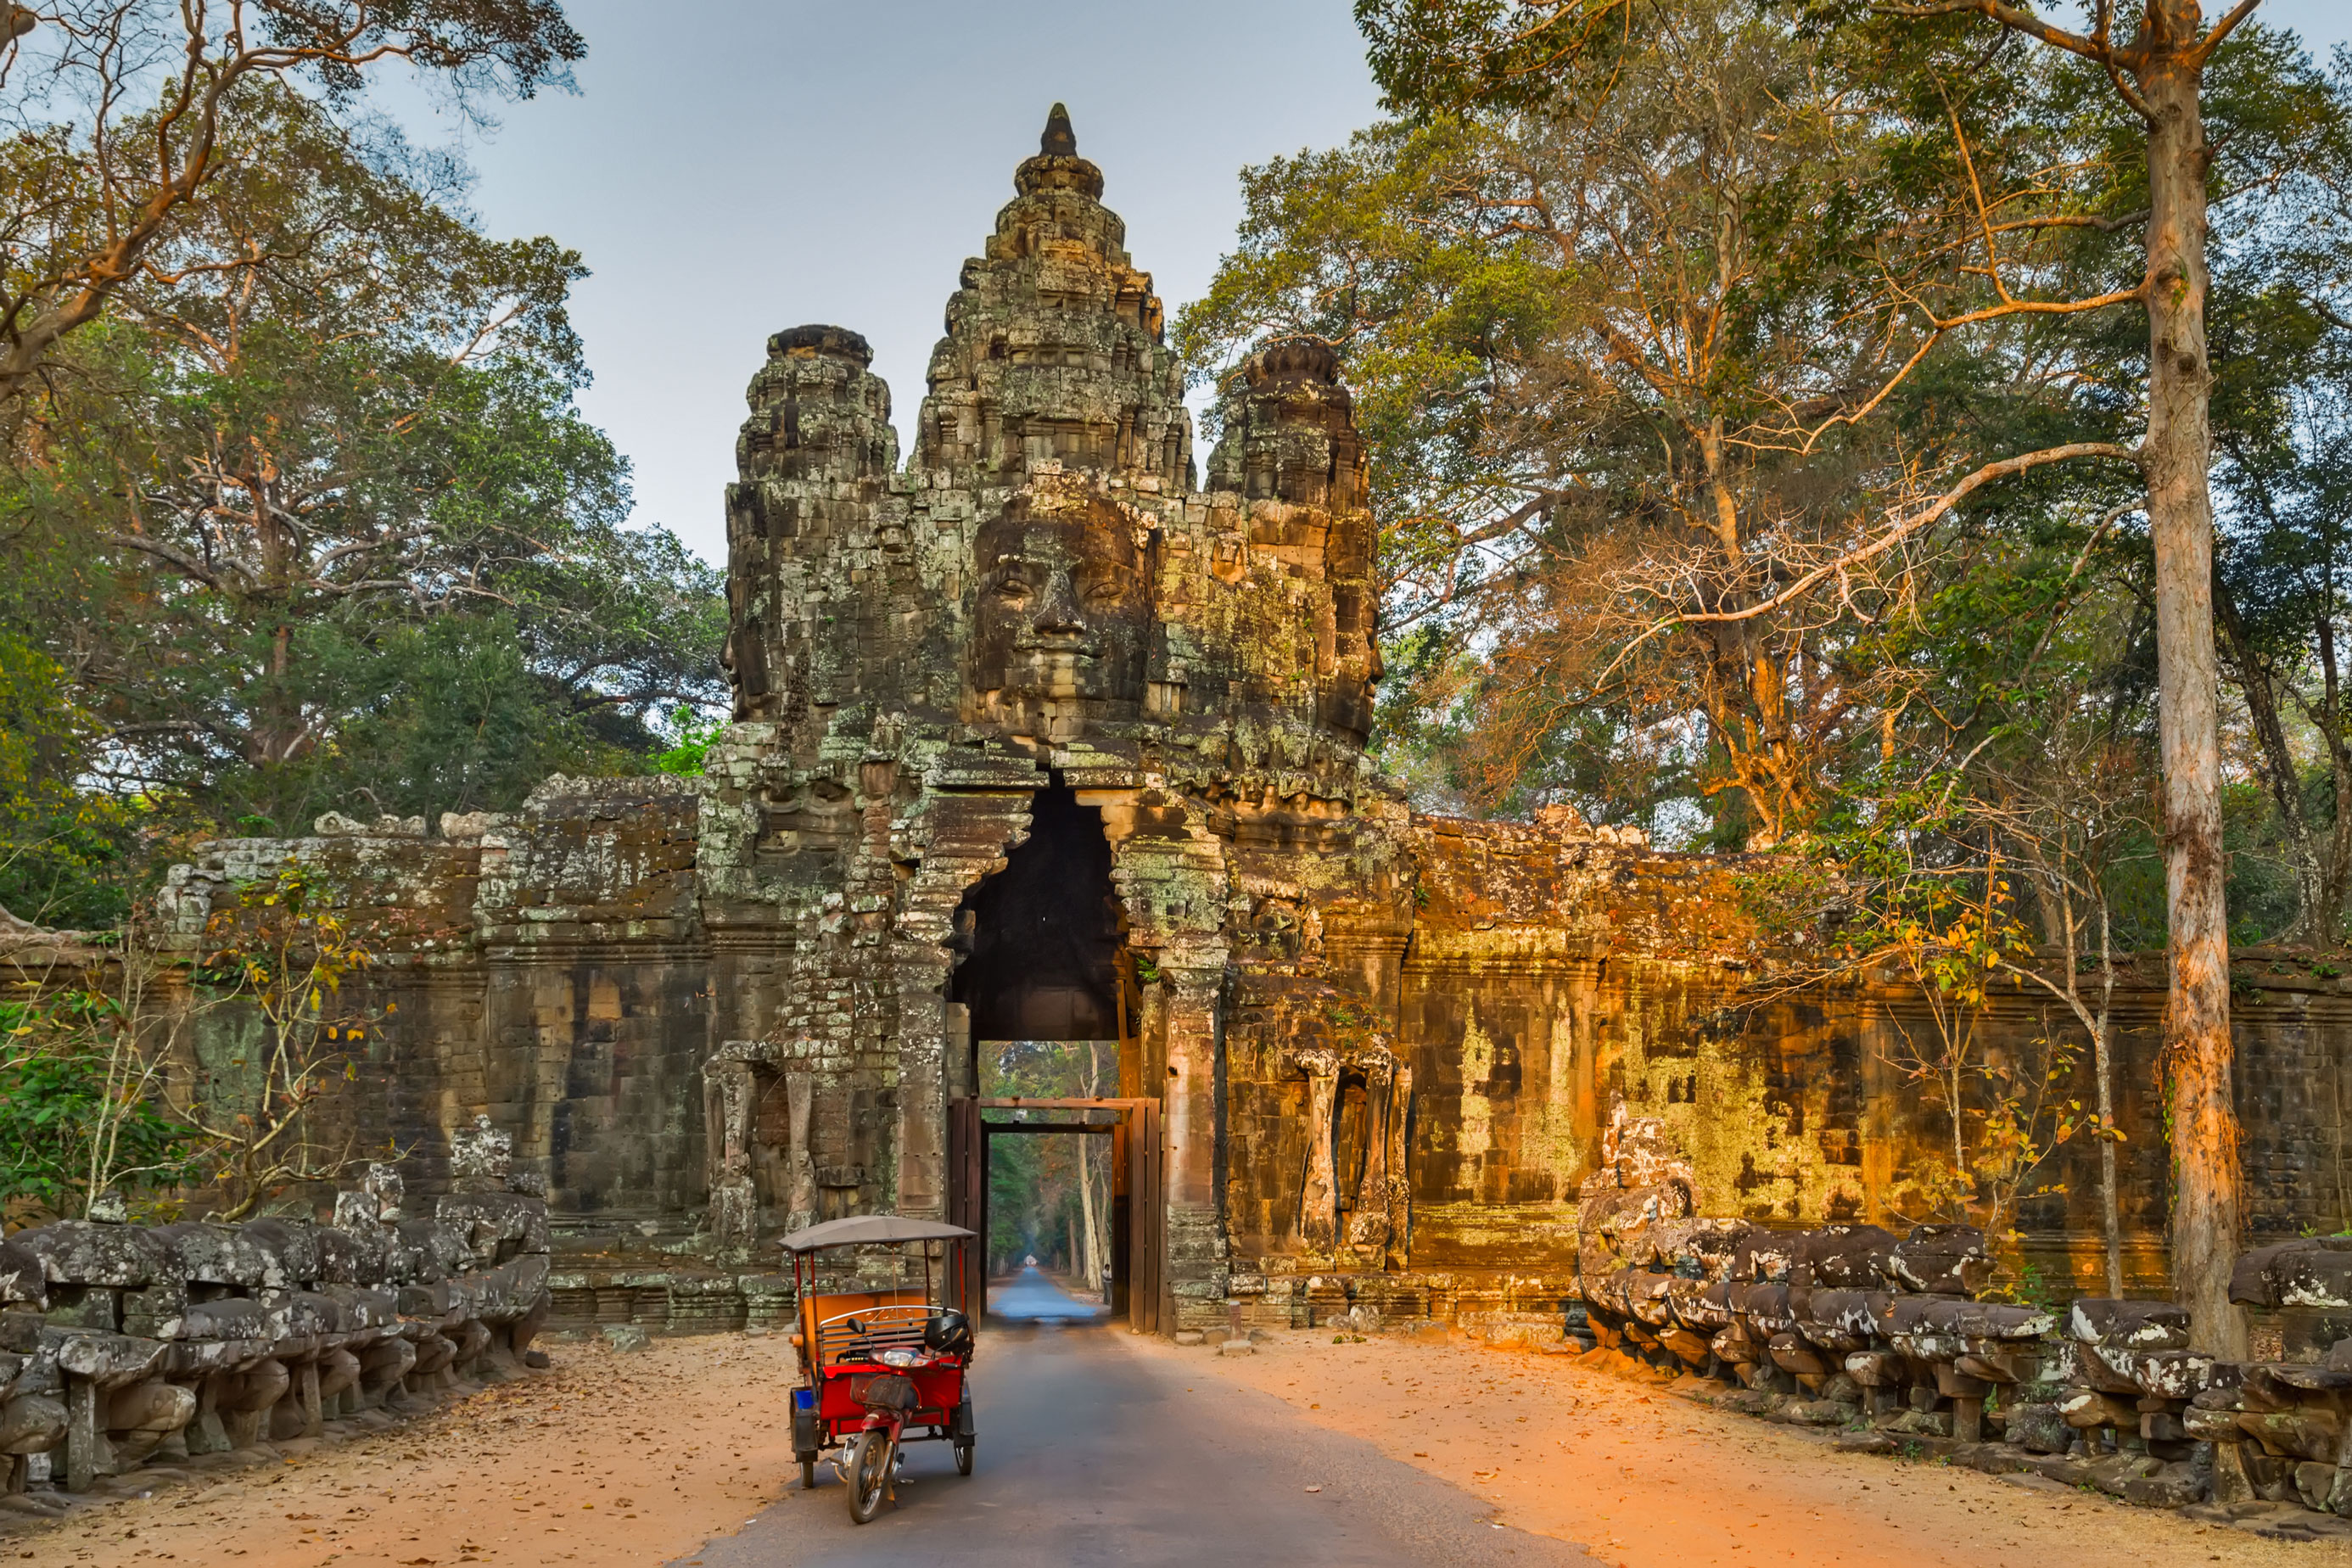 Angkor Thom war die letzte Hauptstadt des Khmer-Reiches und zählt zusammen mit Angkor Wat zu den wichtigsten Sehenswürdigkeiten in Kambodscha